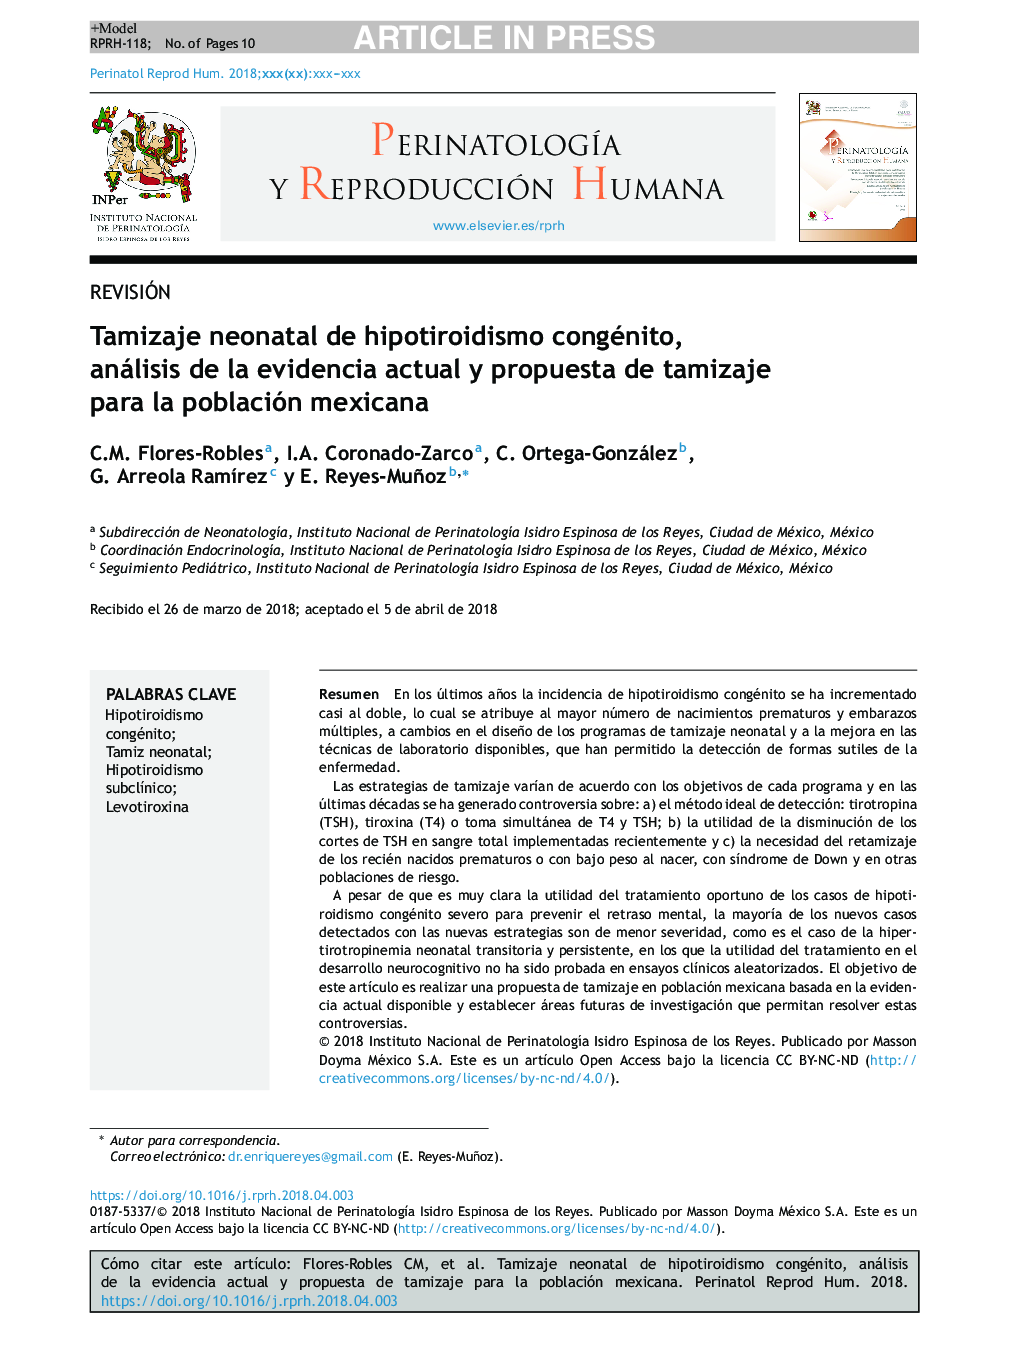 Tamizaje neonatal de hipotiroidismo congénito, análisis de la evidencia actual y propuesta de tamizaje para la población mexicana